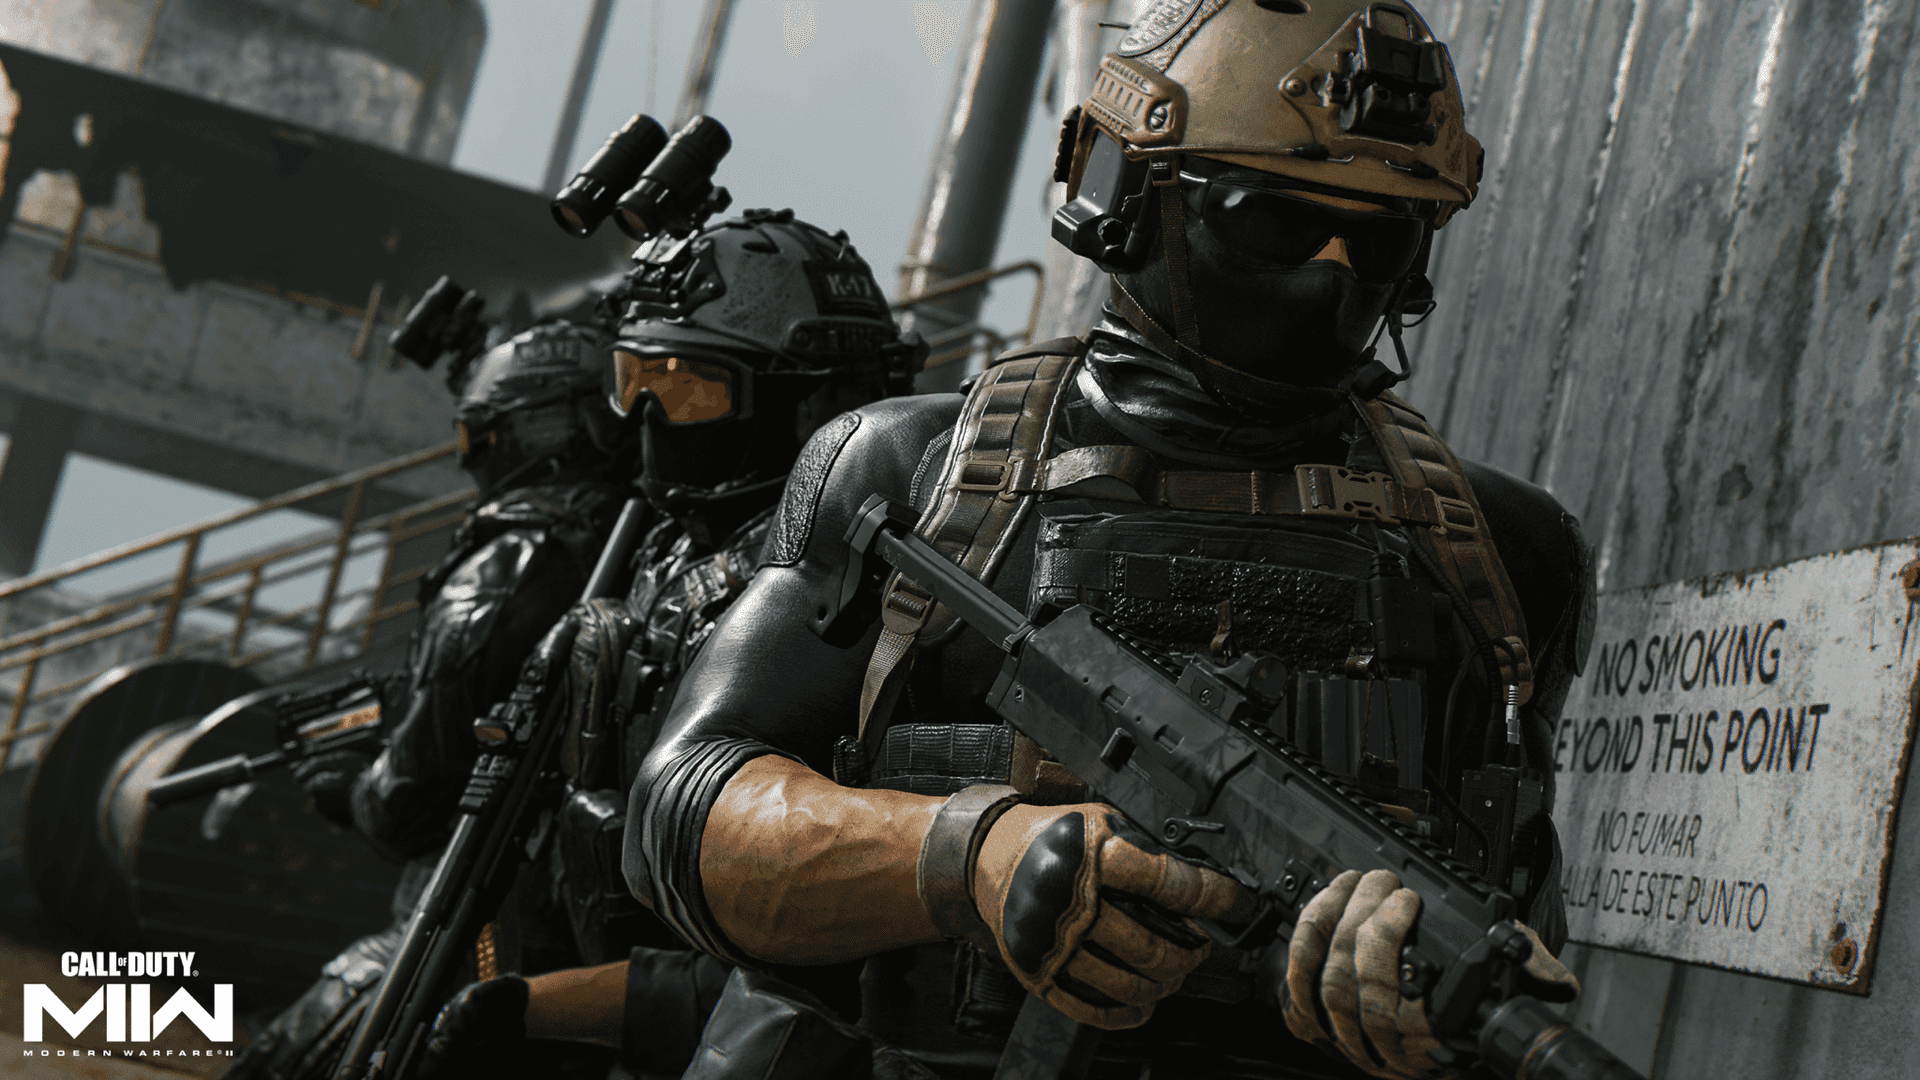 Gördig Redo För En Actionfylld Spelupplevelse Med Call Of Duty